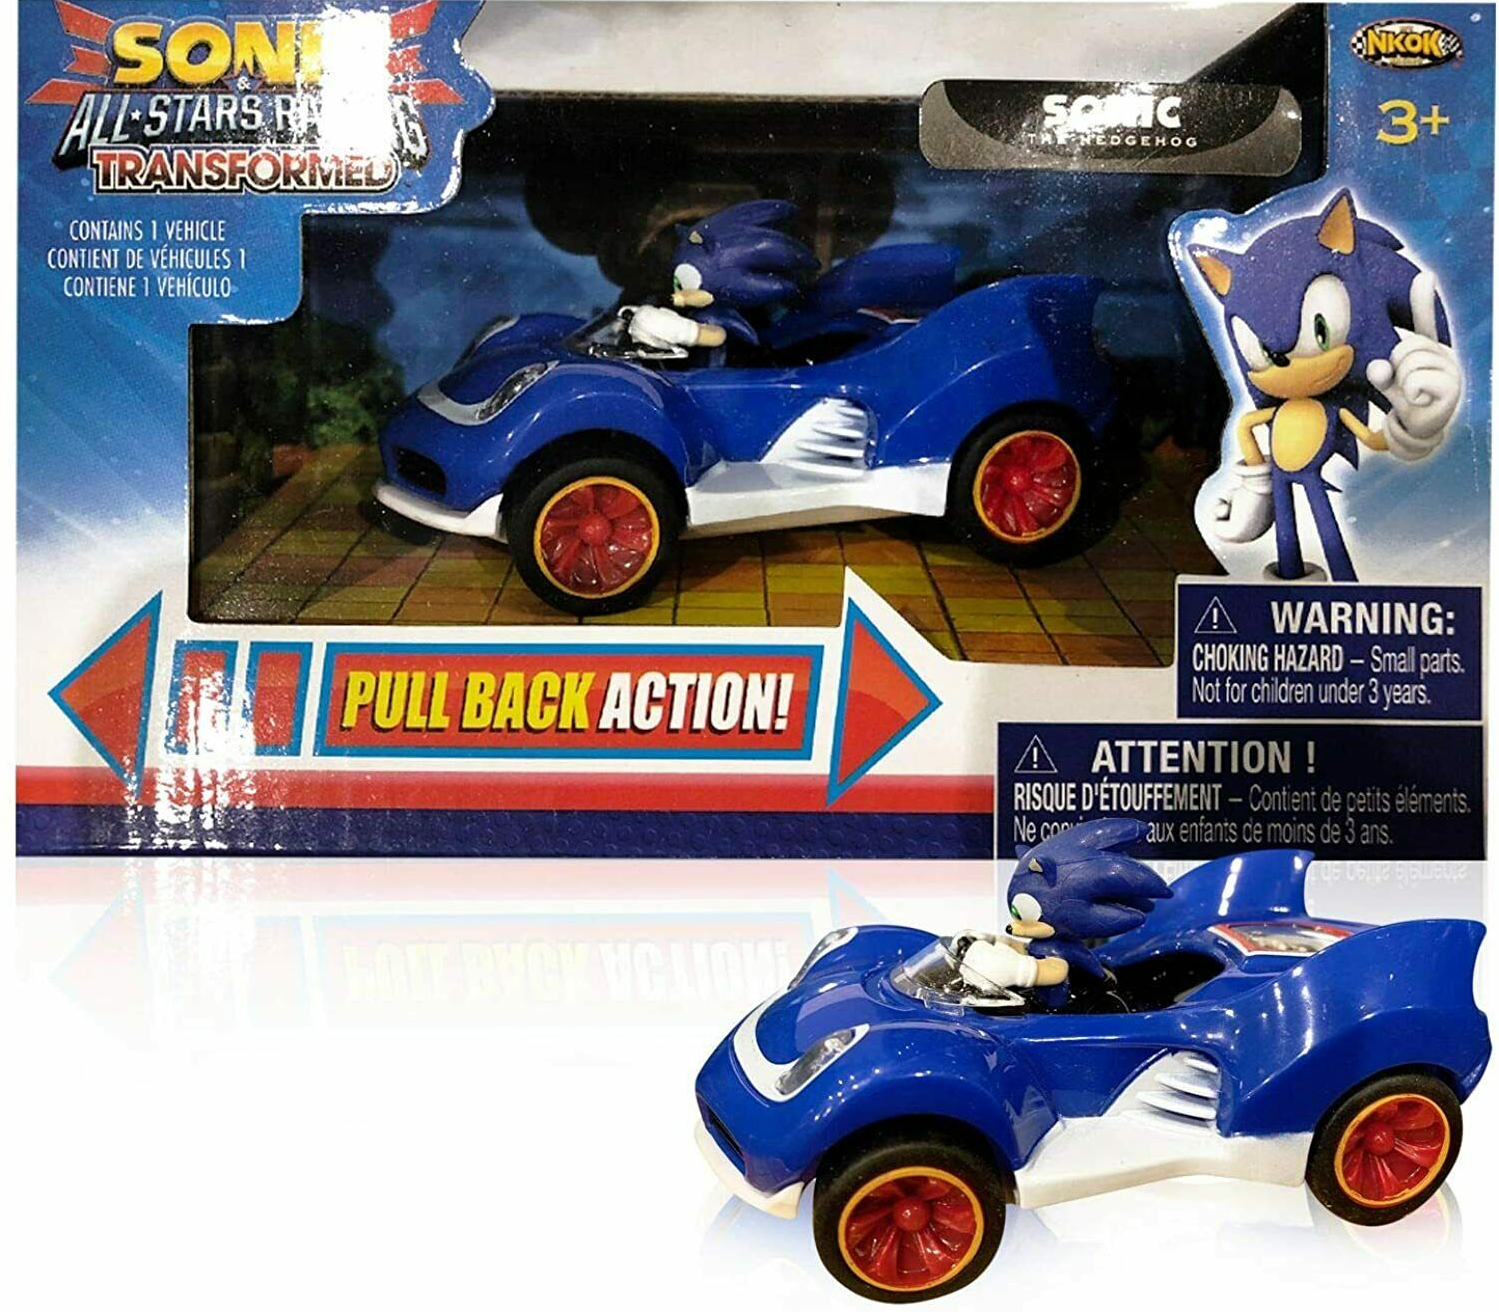 The Hedgehog Toy Race Car Set – Paquete de regalo de Sonic con calcomanías  Sonic Pull Back Racecar Plus y más (set de autos de carreras sónico), juego